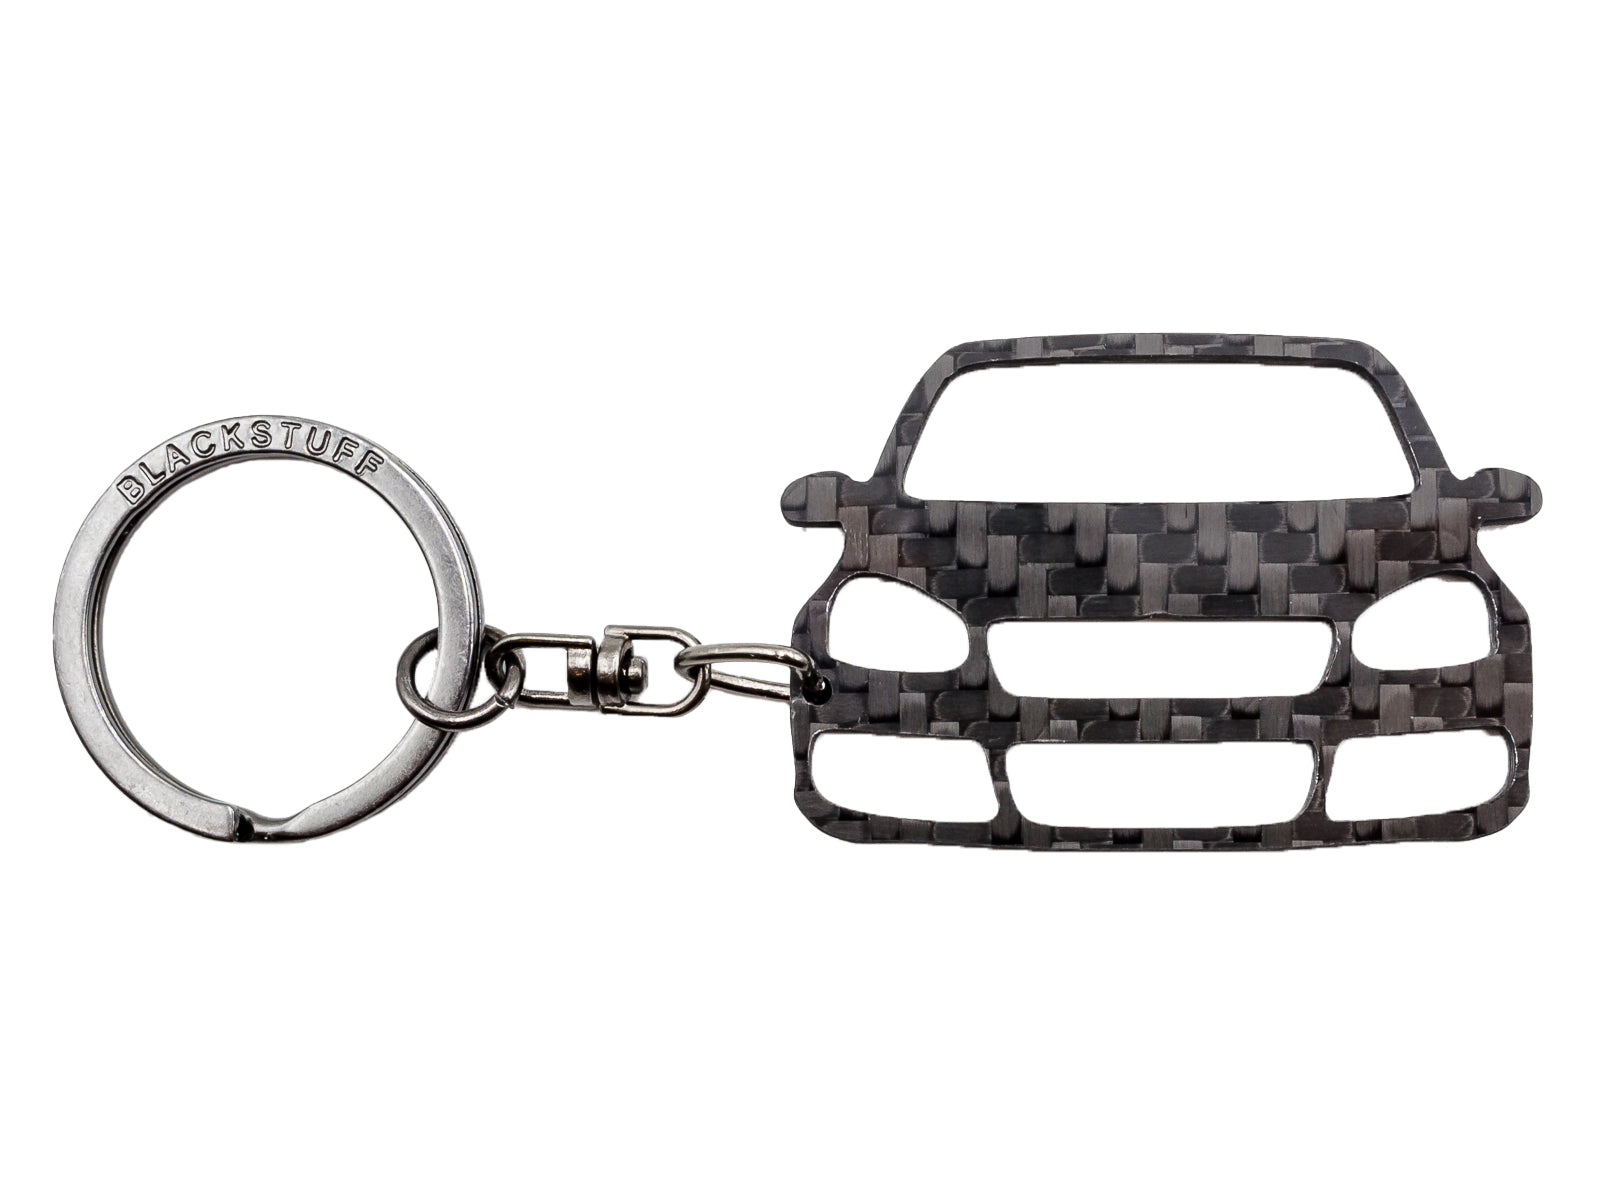 BlackStuff Carbon Fiber Keychain Keyring Ring Holder Compatible with Golf R32 Mk5 2003-2008 BS-918